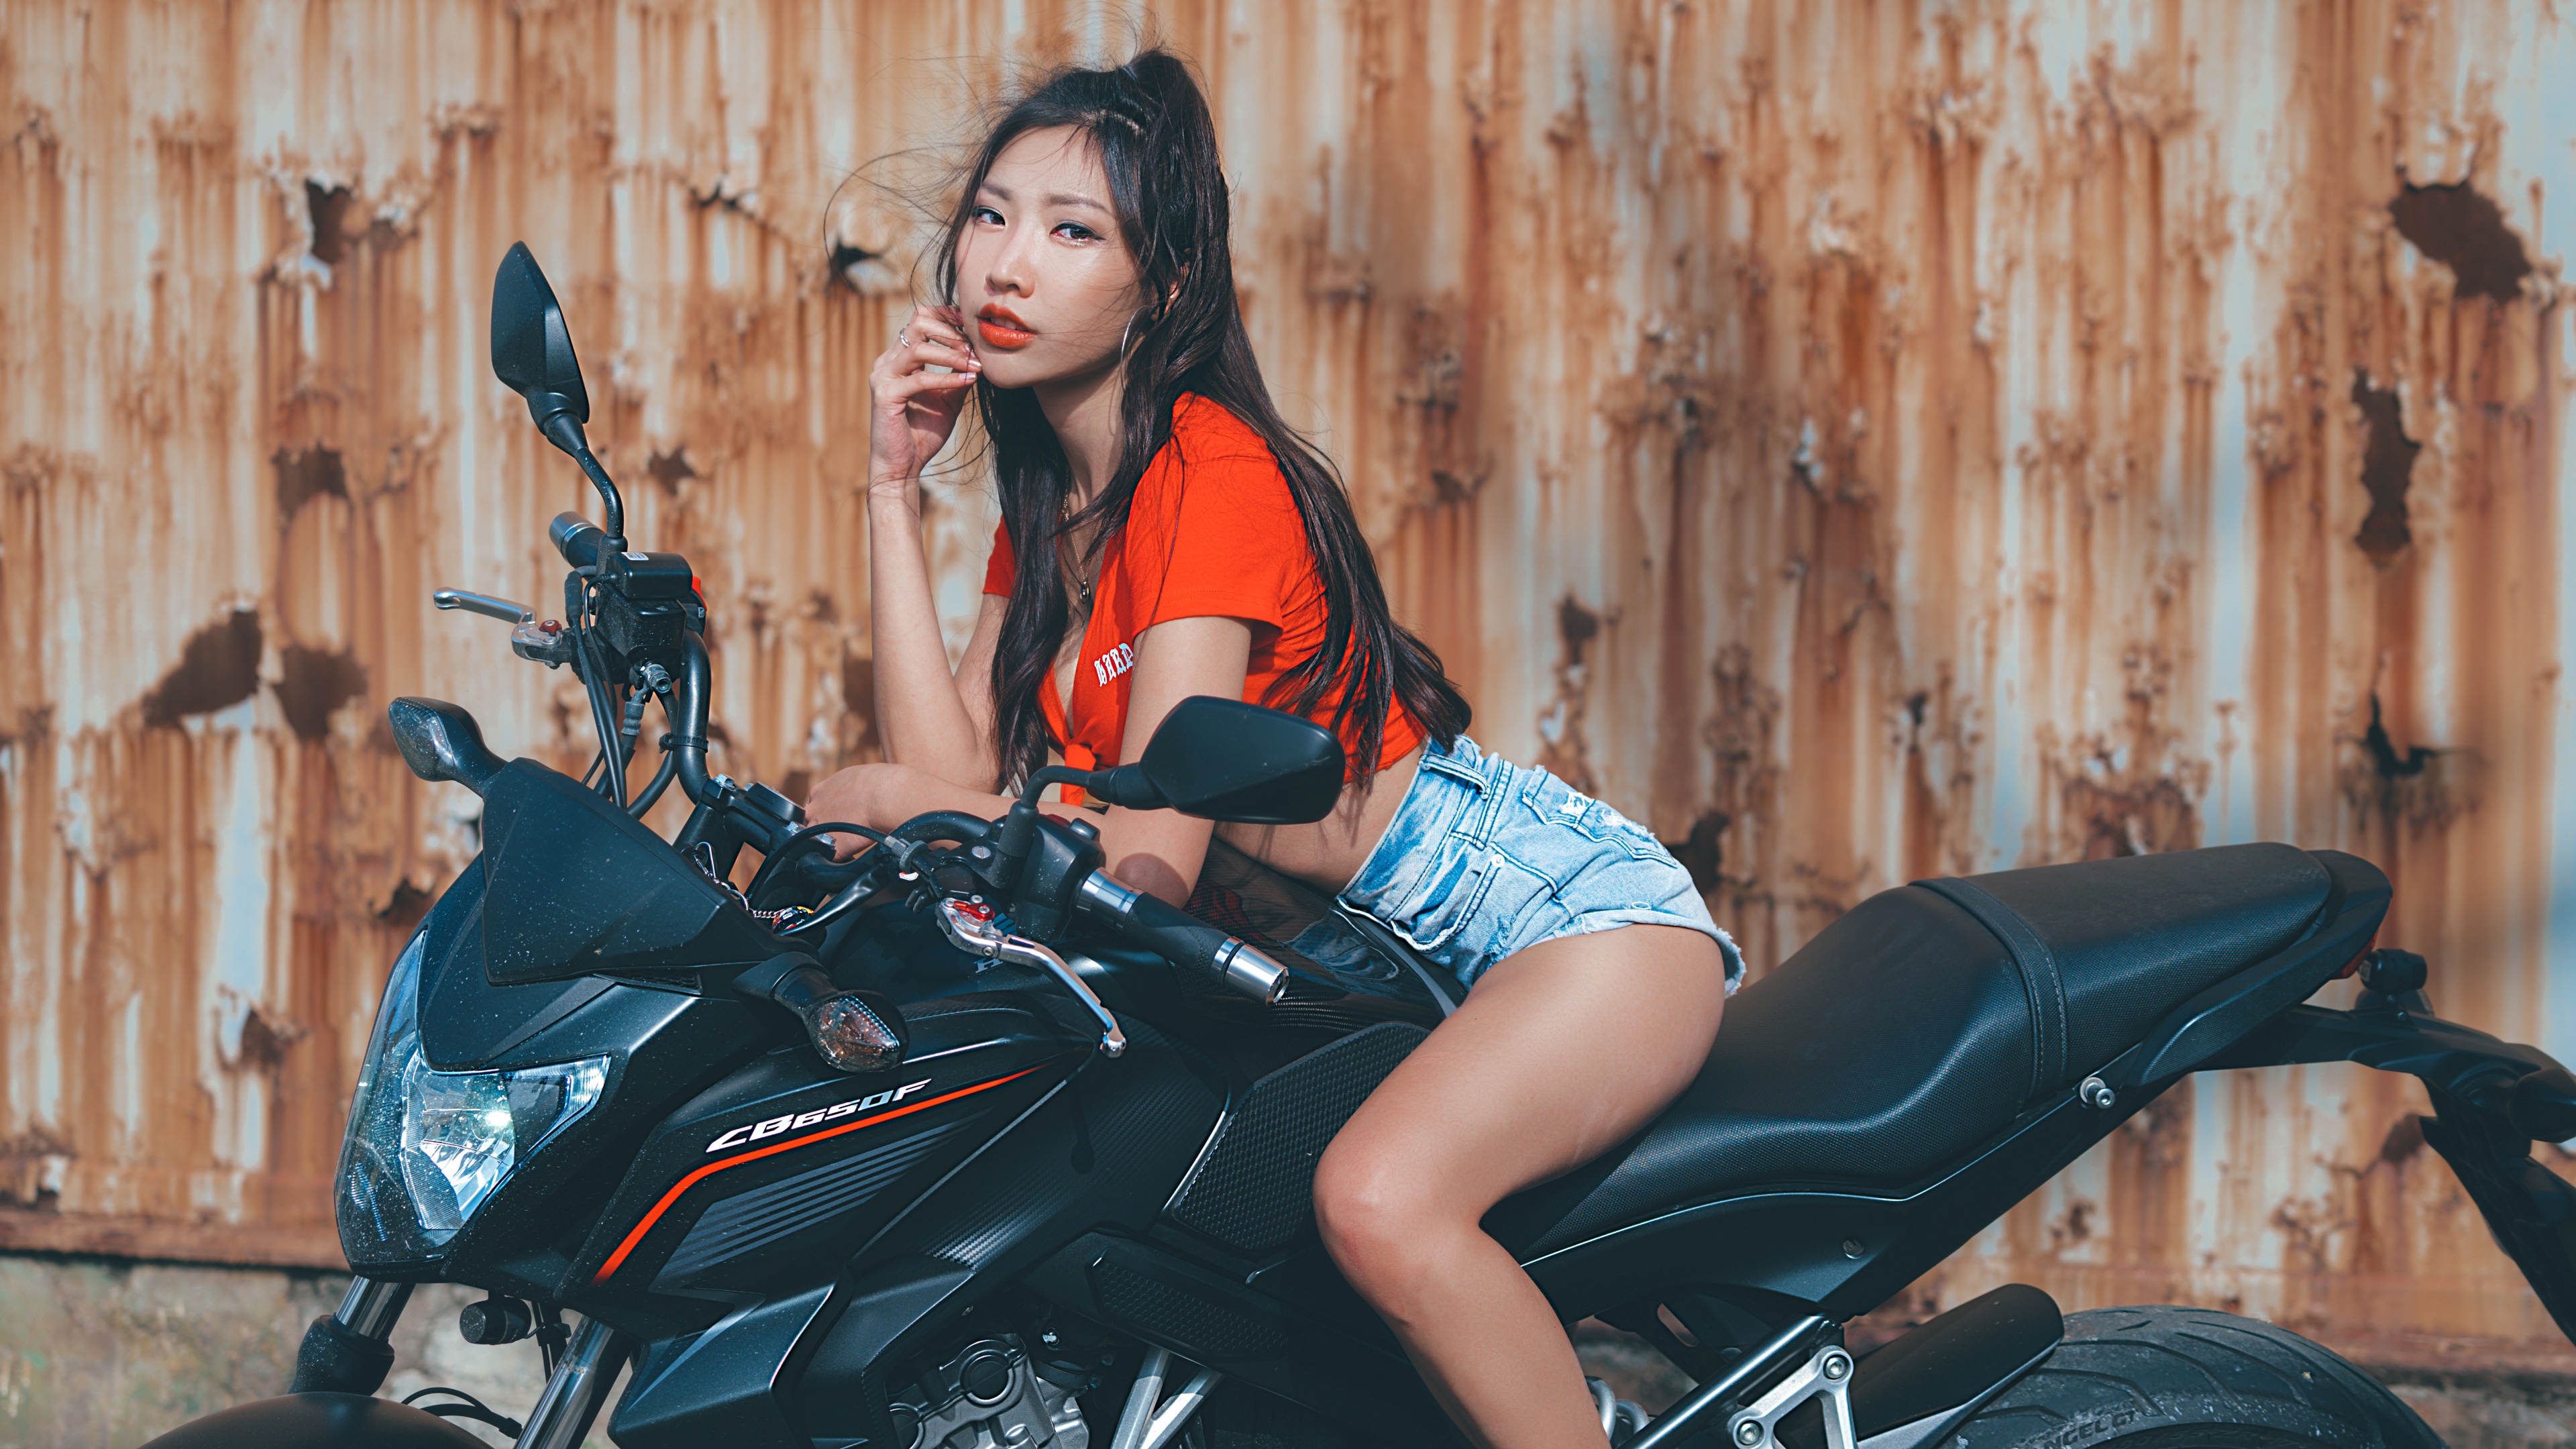 Фото бесплатно девушки, мотоциклы, брюнетка